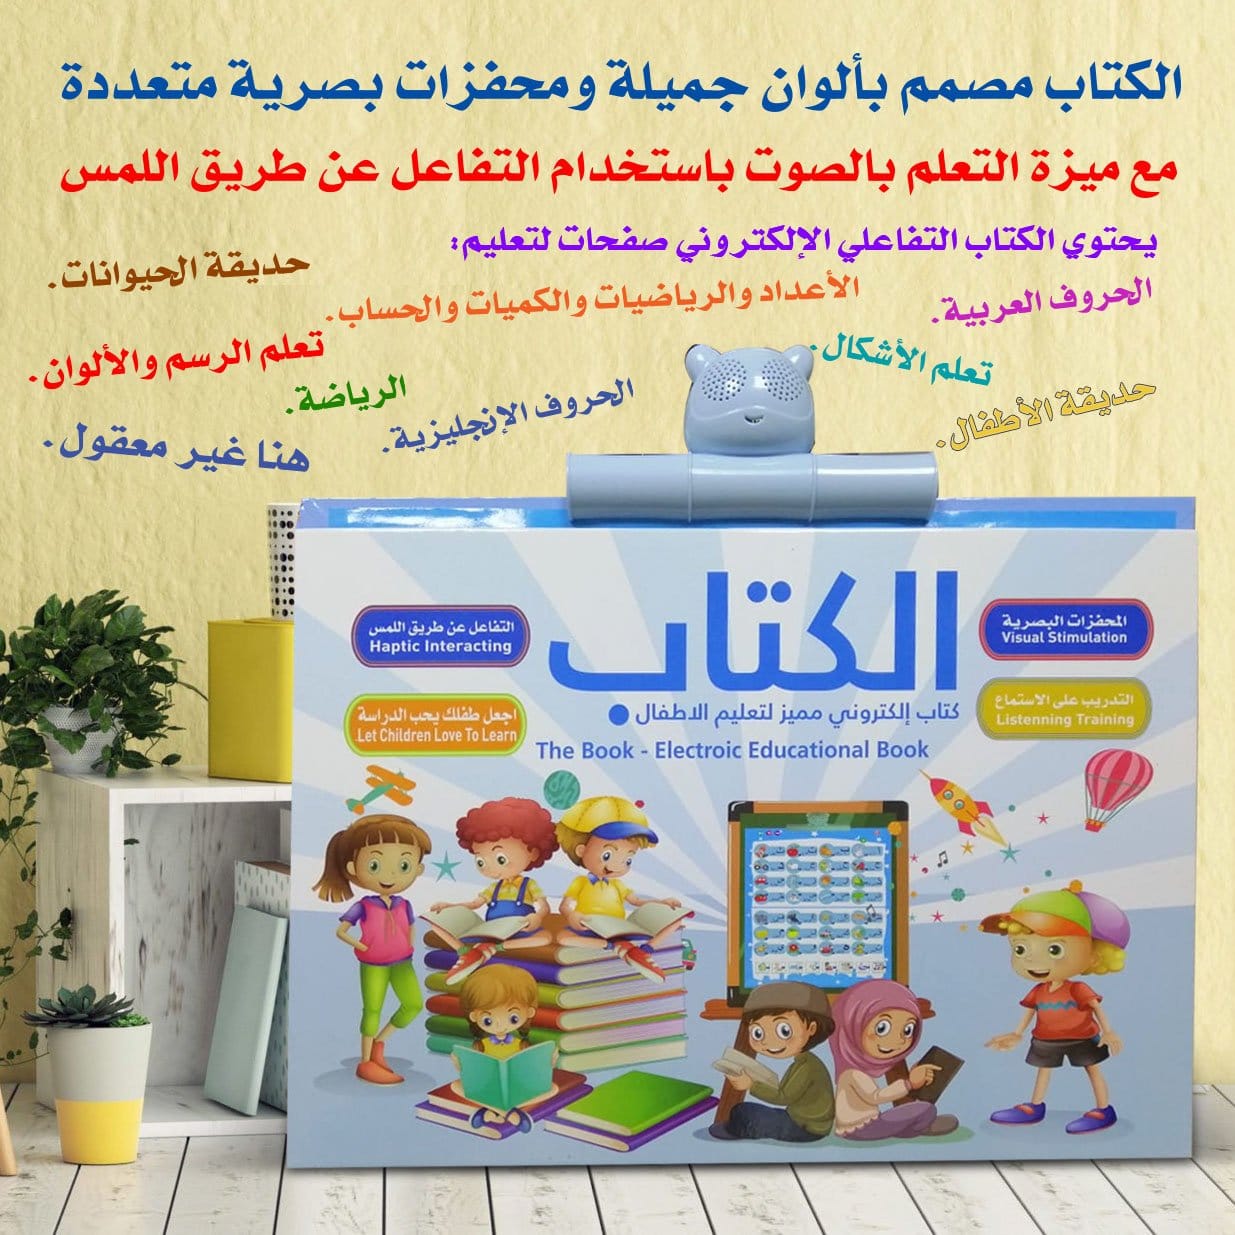 الكتاب المميز باللغة العربية و الانجليزية